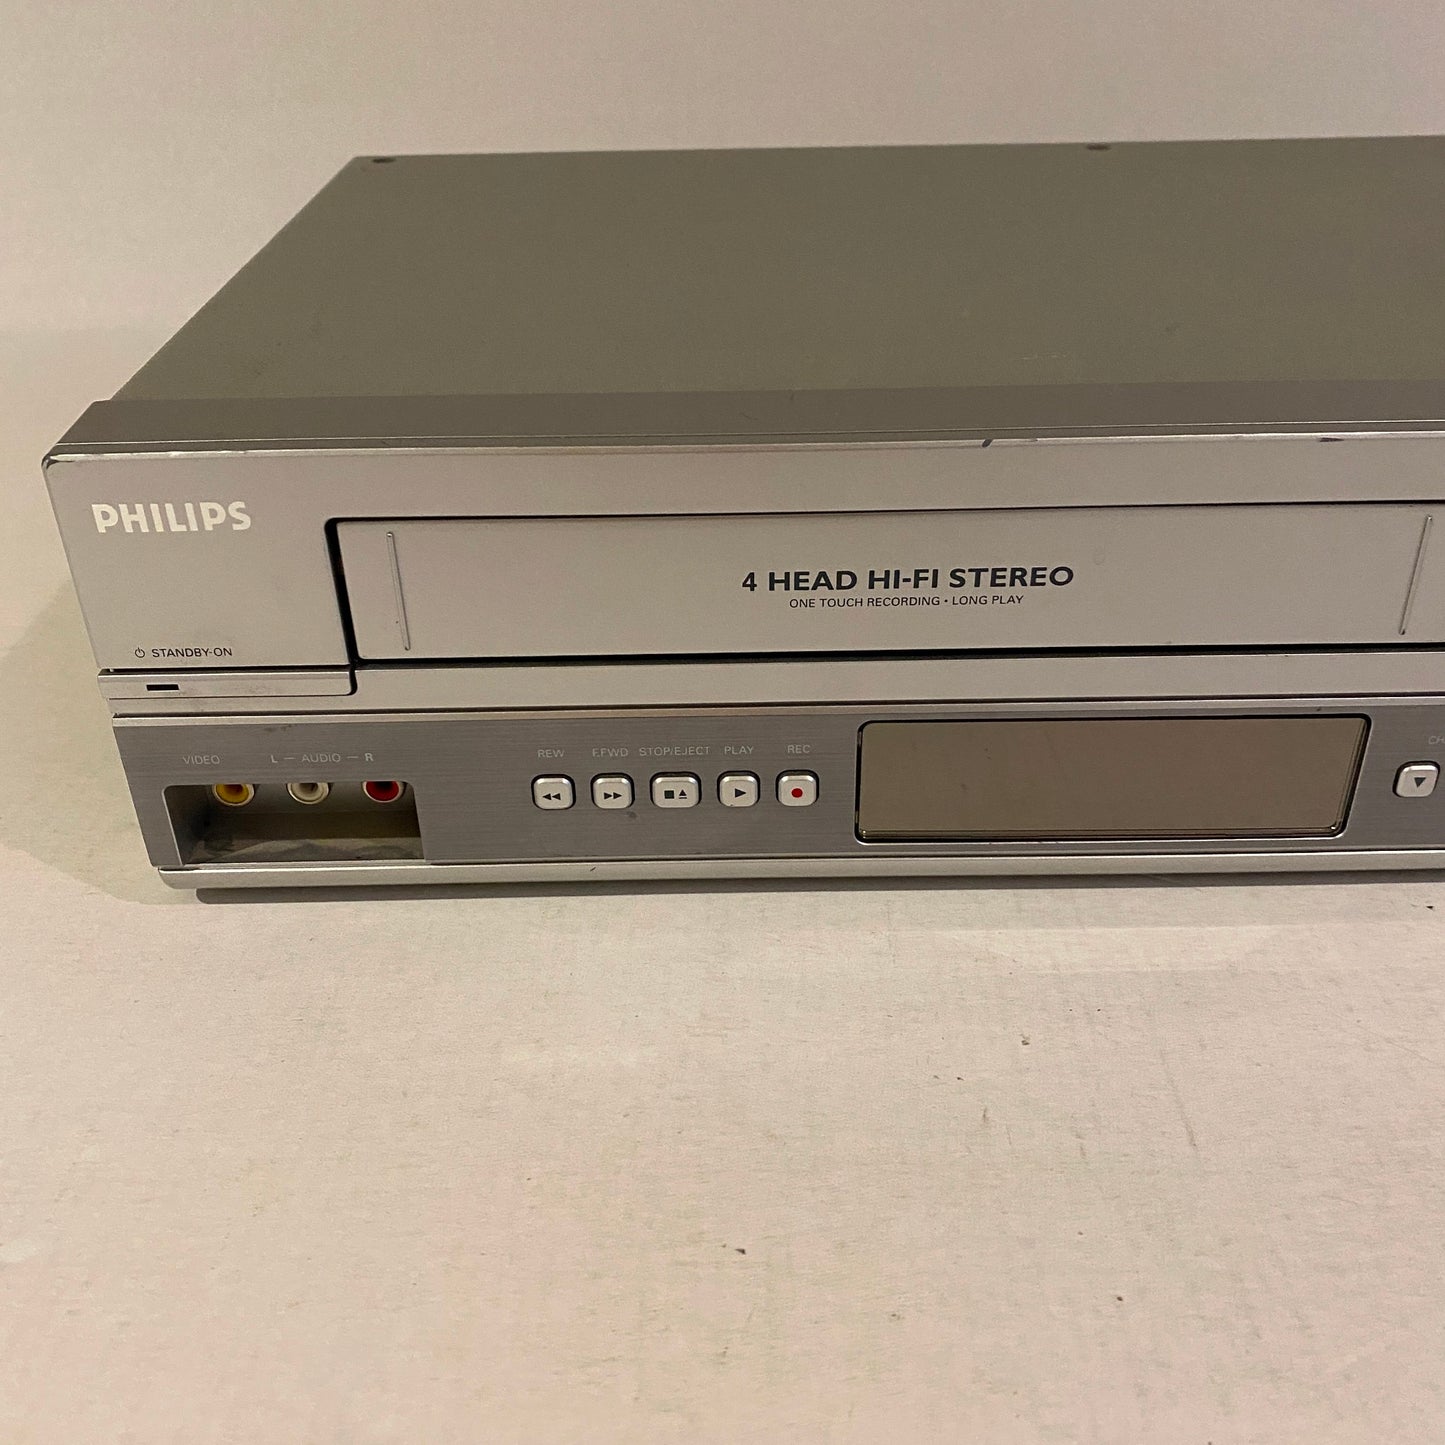 Phillips VHS DVD Combo Player - DVP3150V